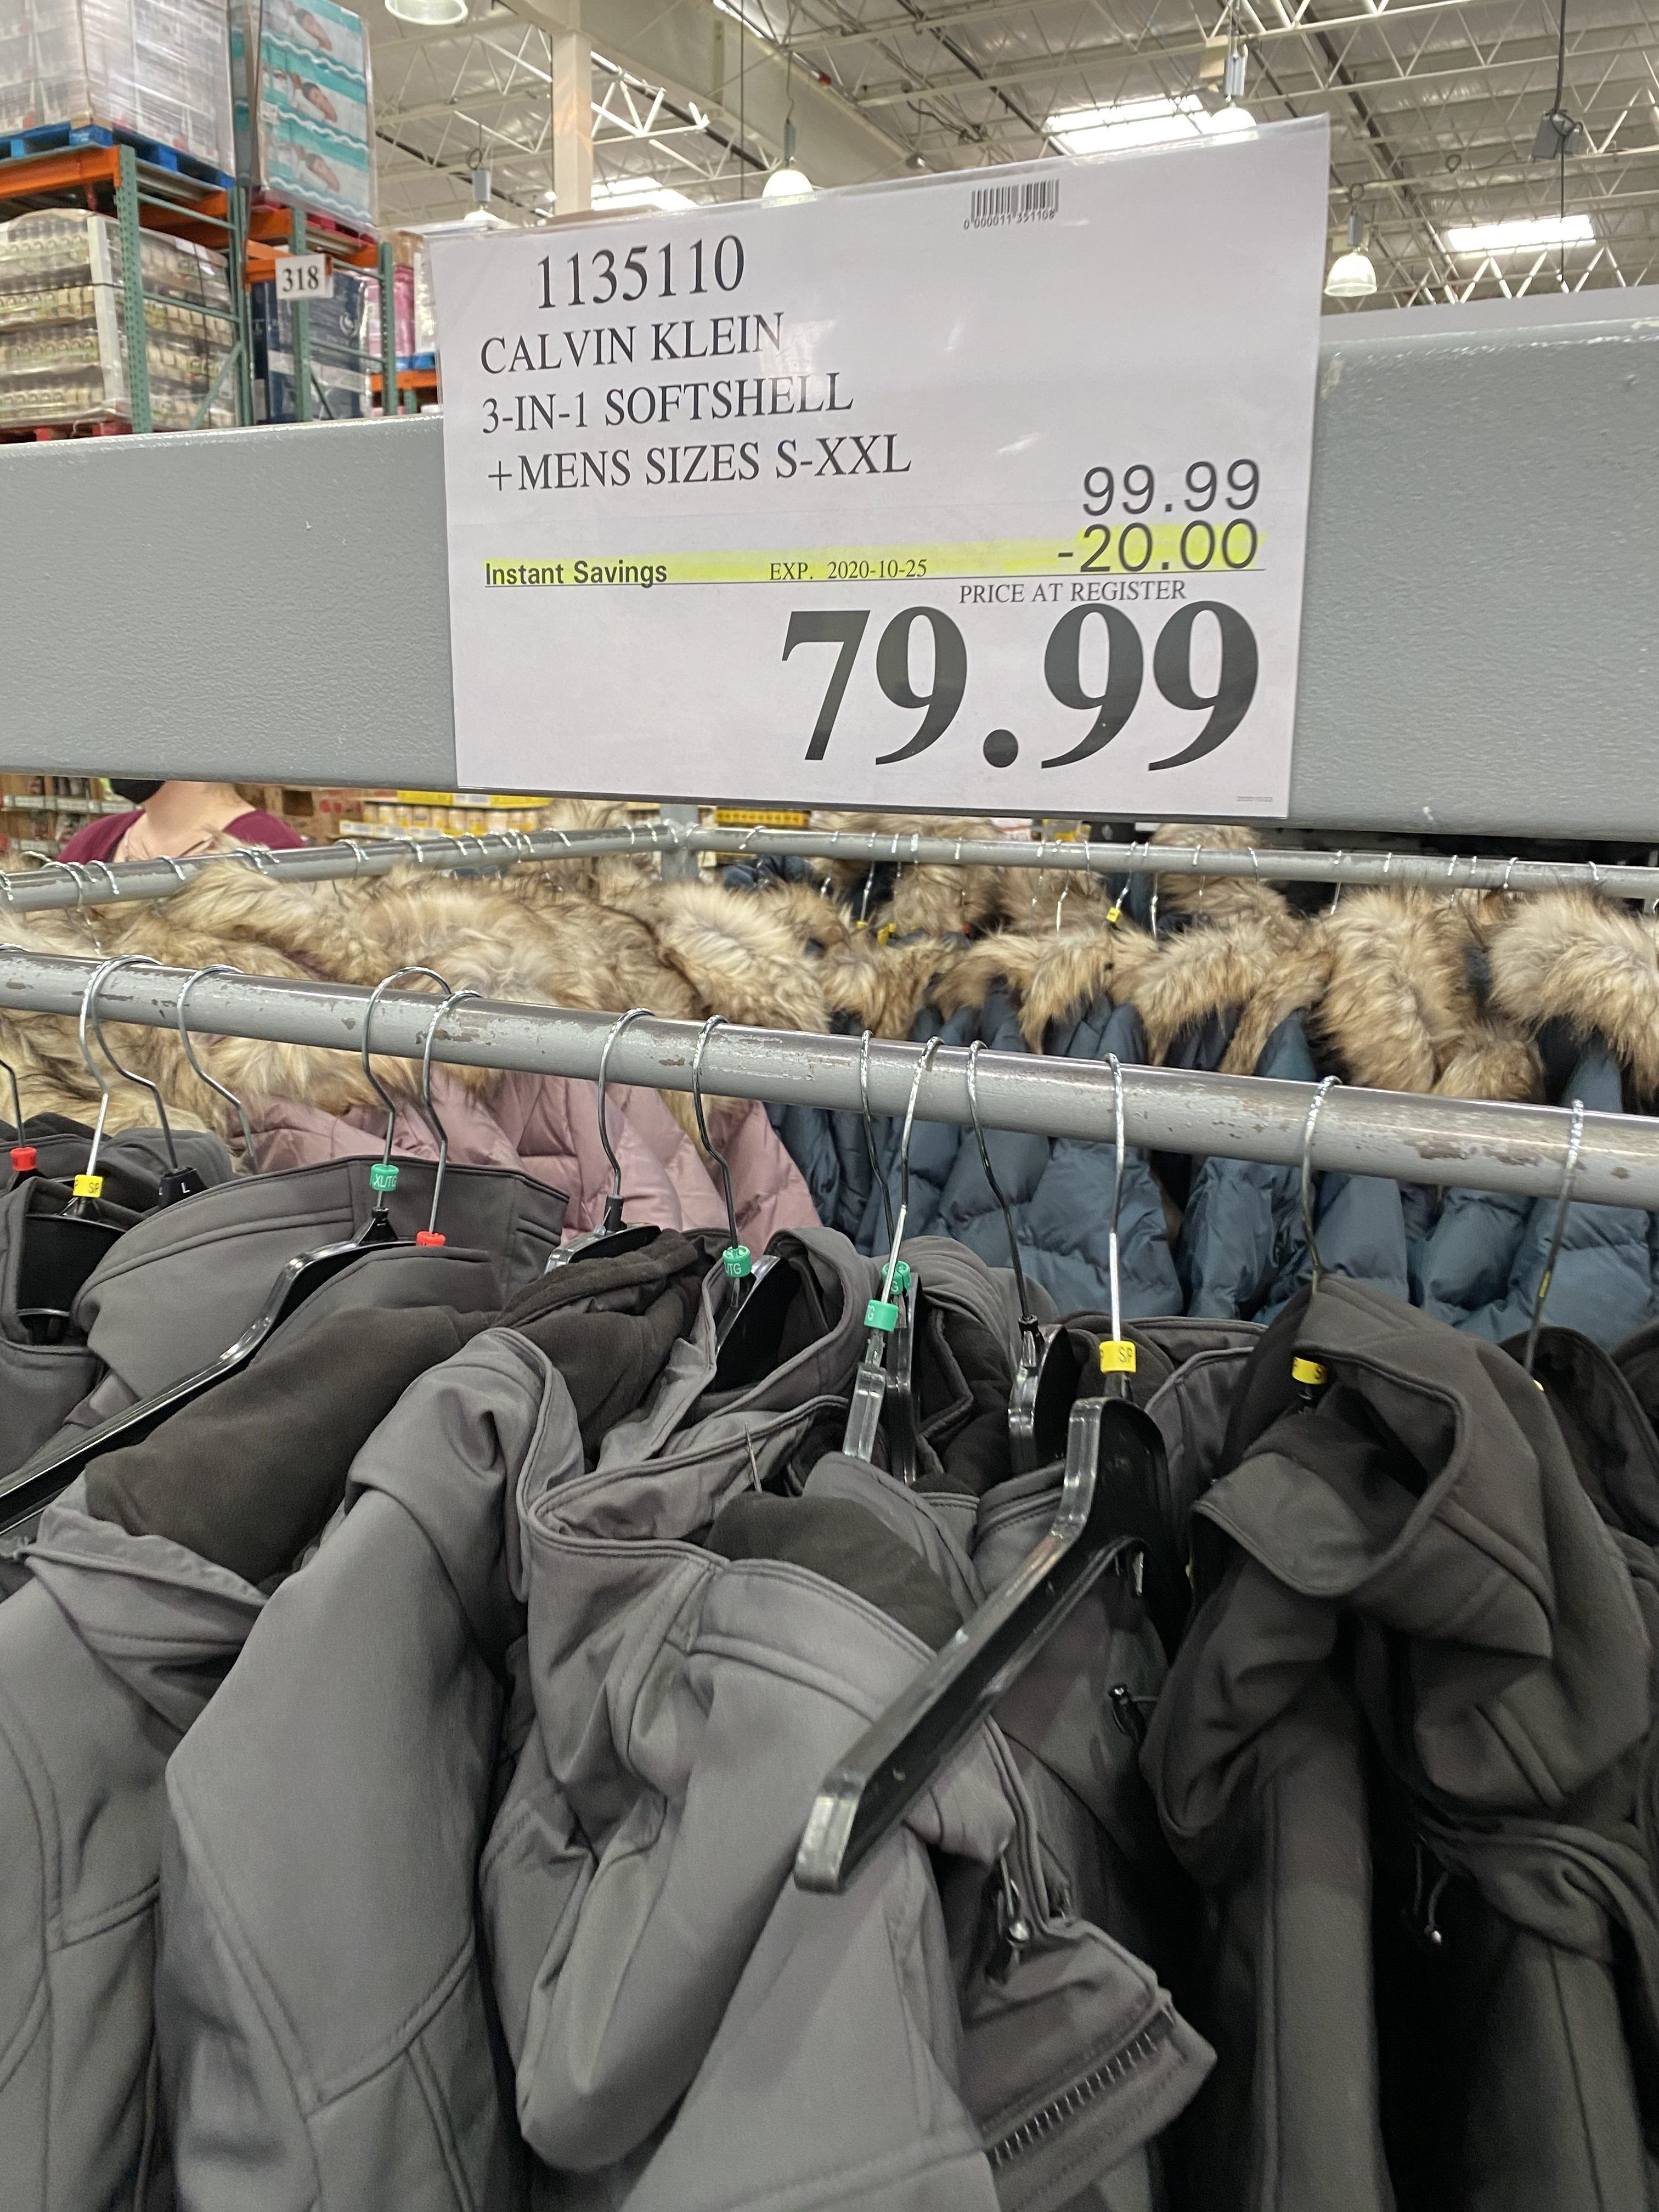 Costco] Costco.ca: Calvin Klein Men's 3-in-1 Jacket $84.99 (save